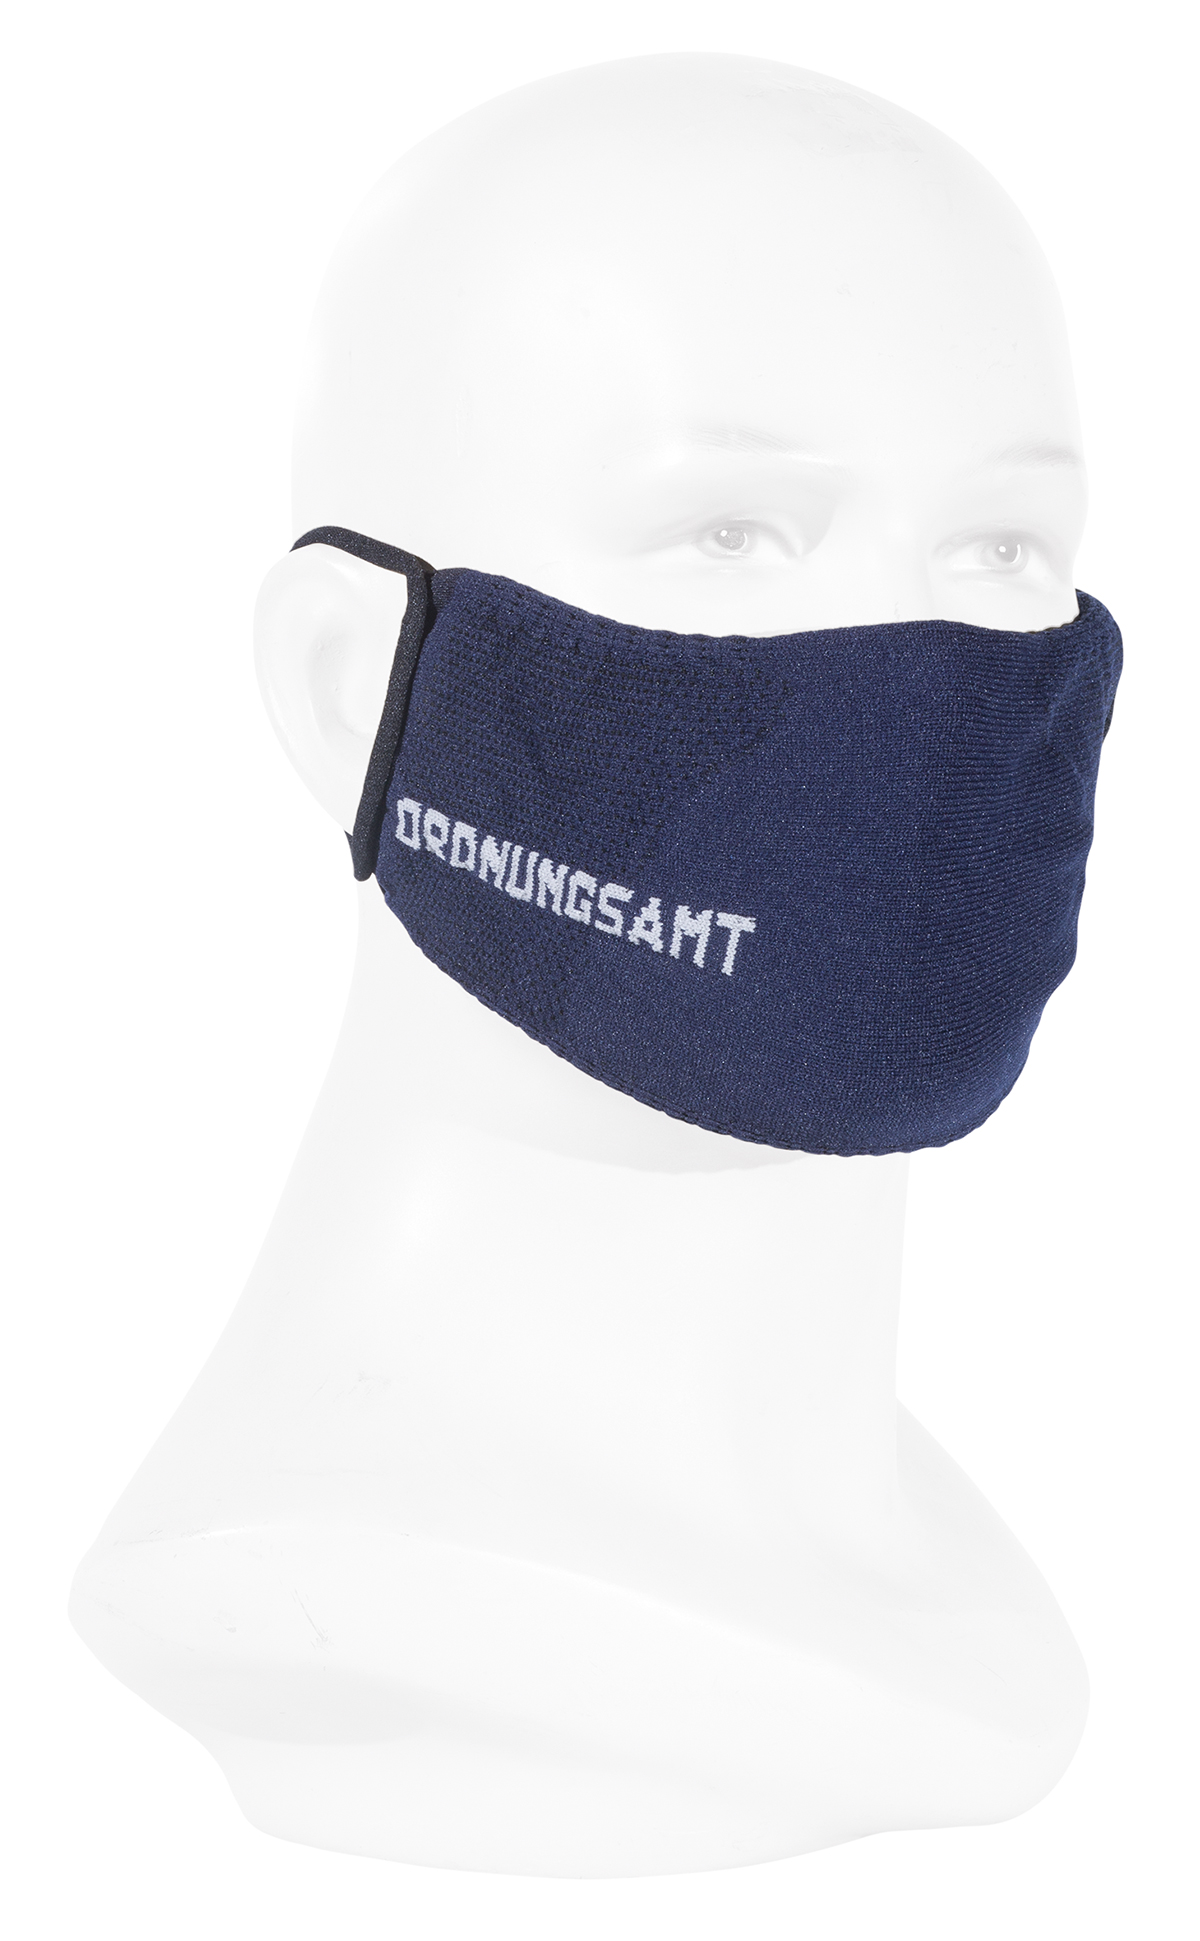 Máscara de protección boca-nariz ORDNICIONAL - CWA 17553:2020